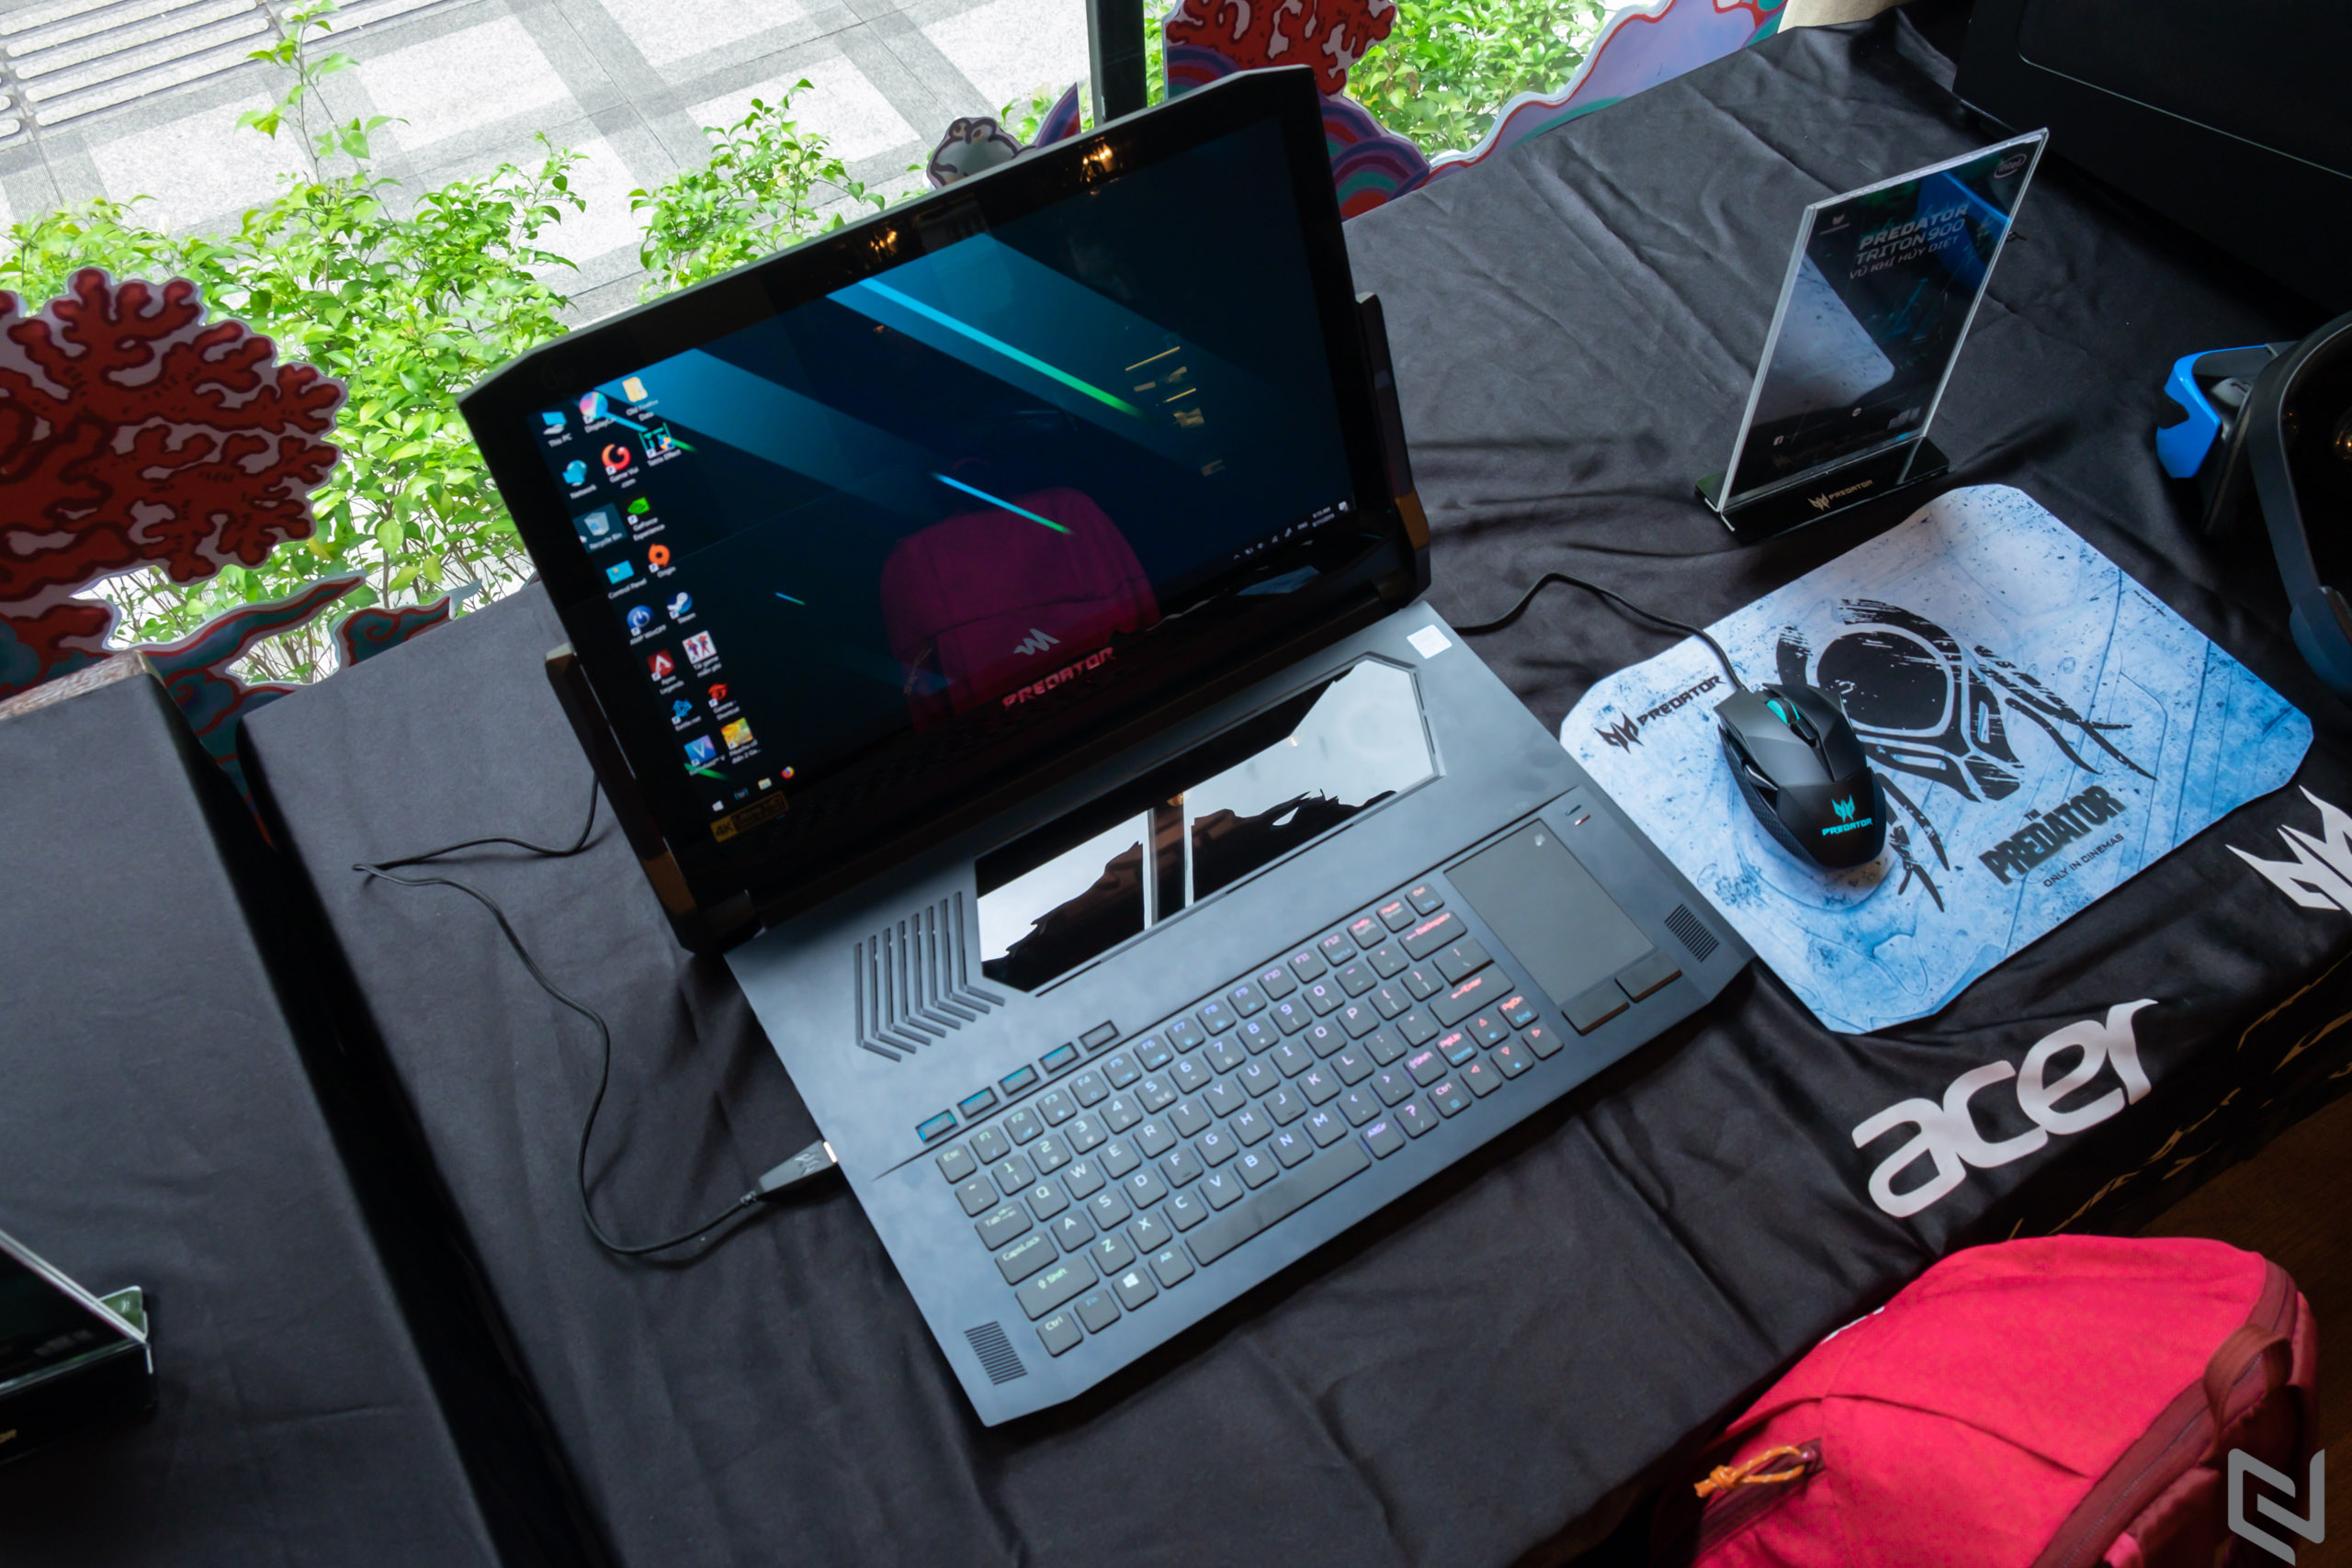 Predator Fans Day 2019 - Buổi offline ấm cúng Acer dành tặng cho người dùng dòng sản phẩm Predator